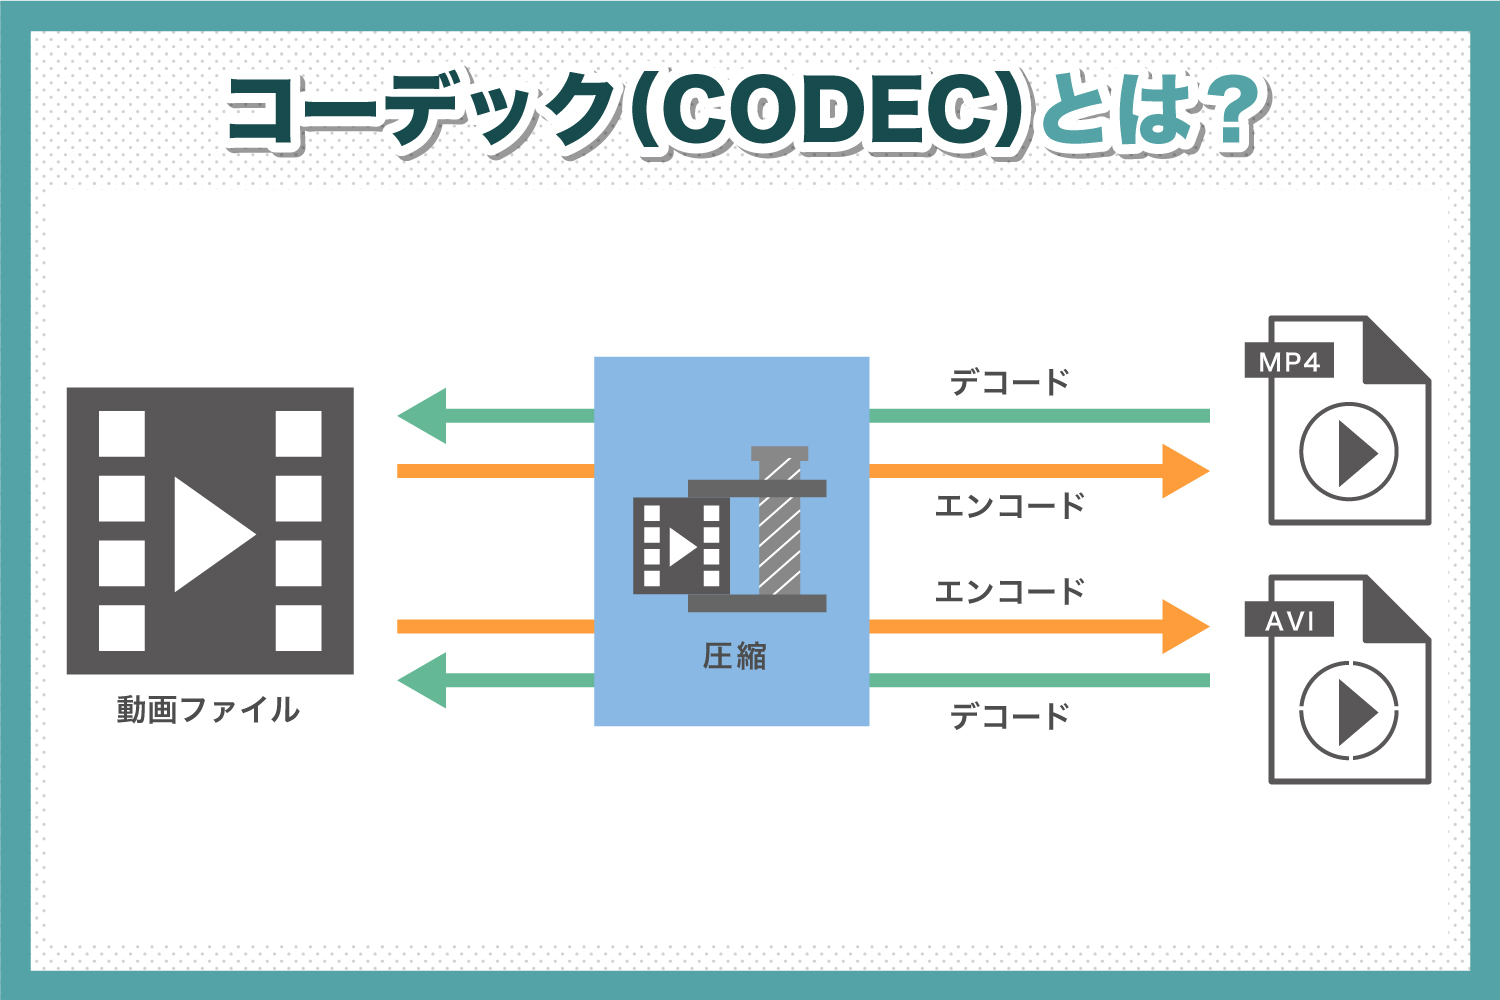 コーデック(CODEC)とは？　コーデックを詳しく解説します